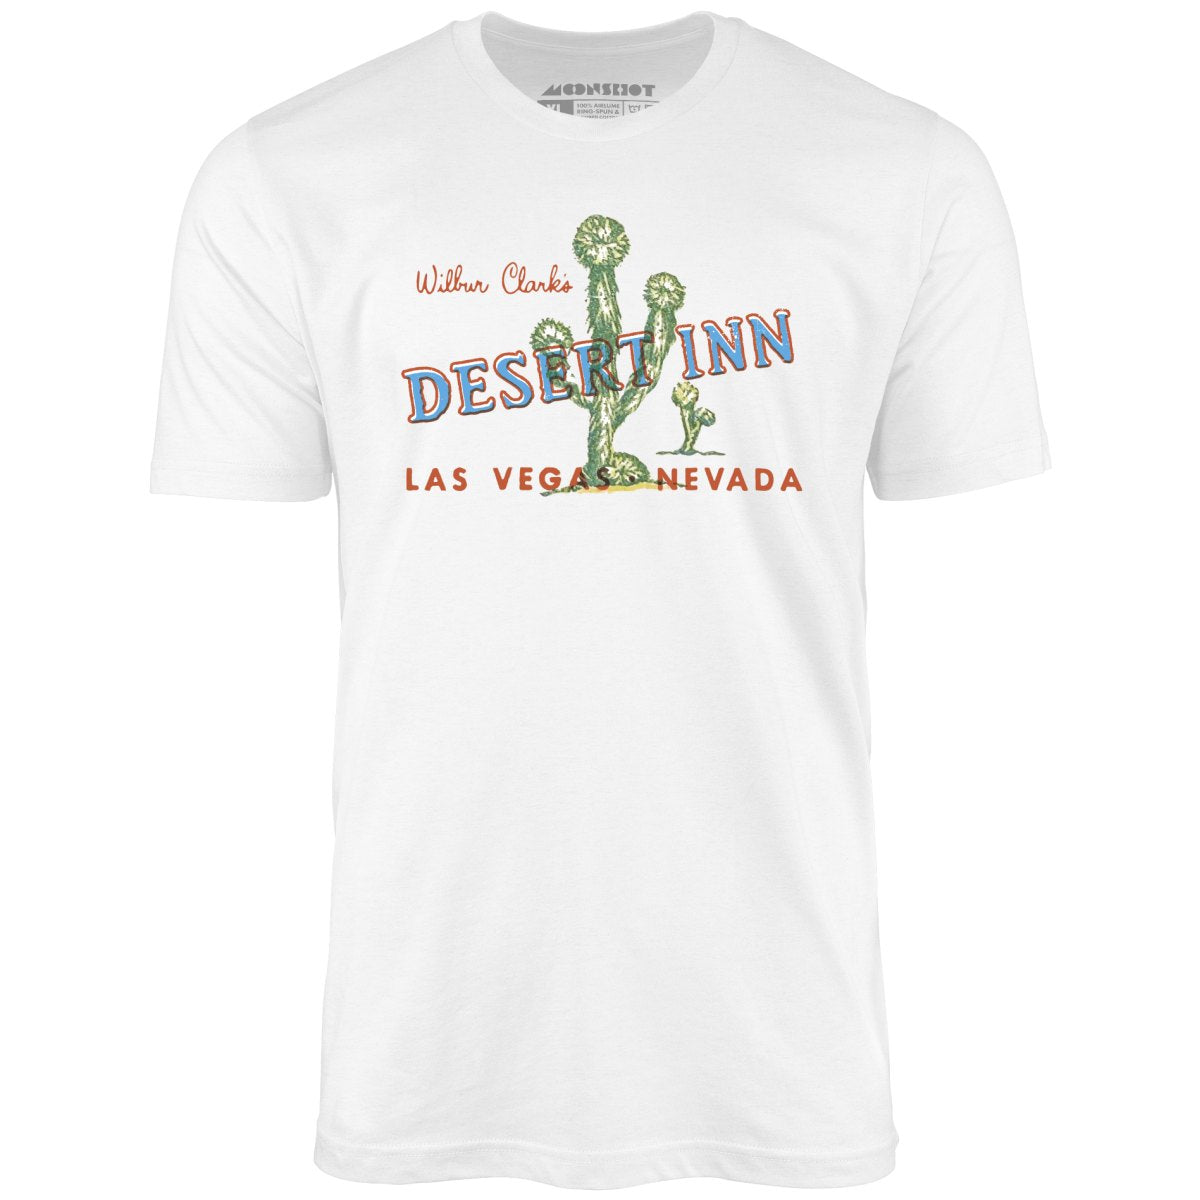 Desert Inn - Vintage Las Vegas - Unisex T-Shirt